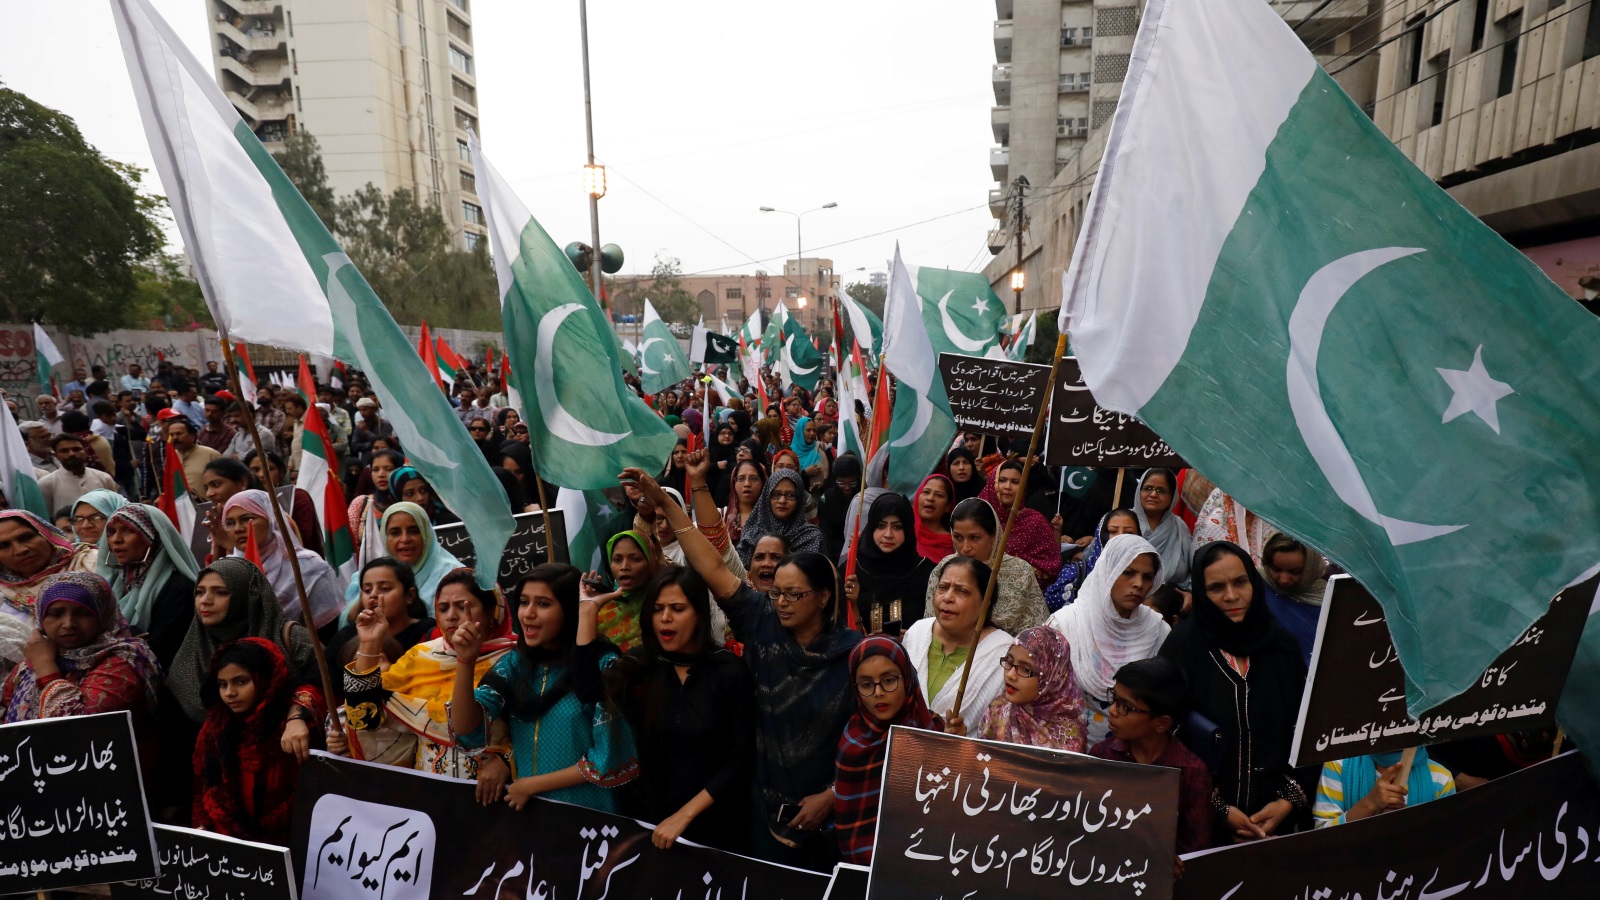  مظاهرة نسائية في مدينة كراتشي الباكستانية تندد بالاحتلال الهندي لكشمير وتؤكد التضامن مع الجيش في مواجهة التهديدات الهندية (رويترز)